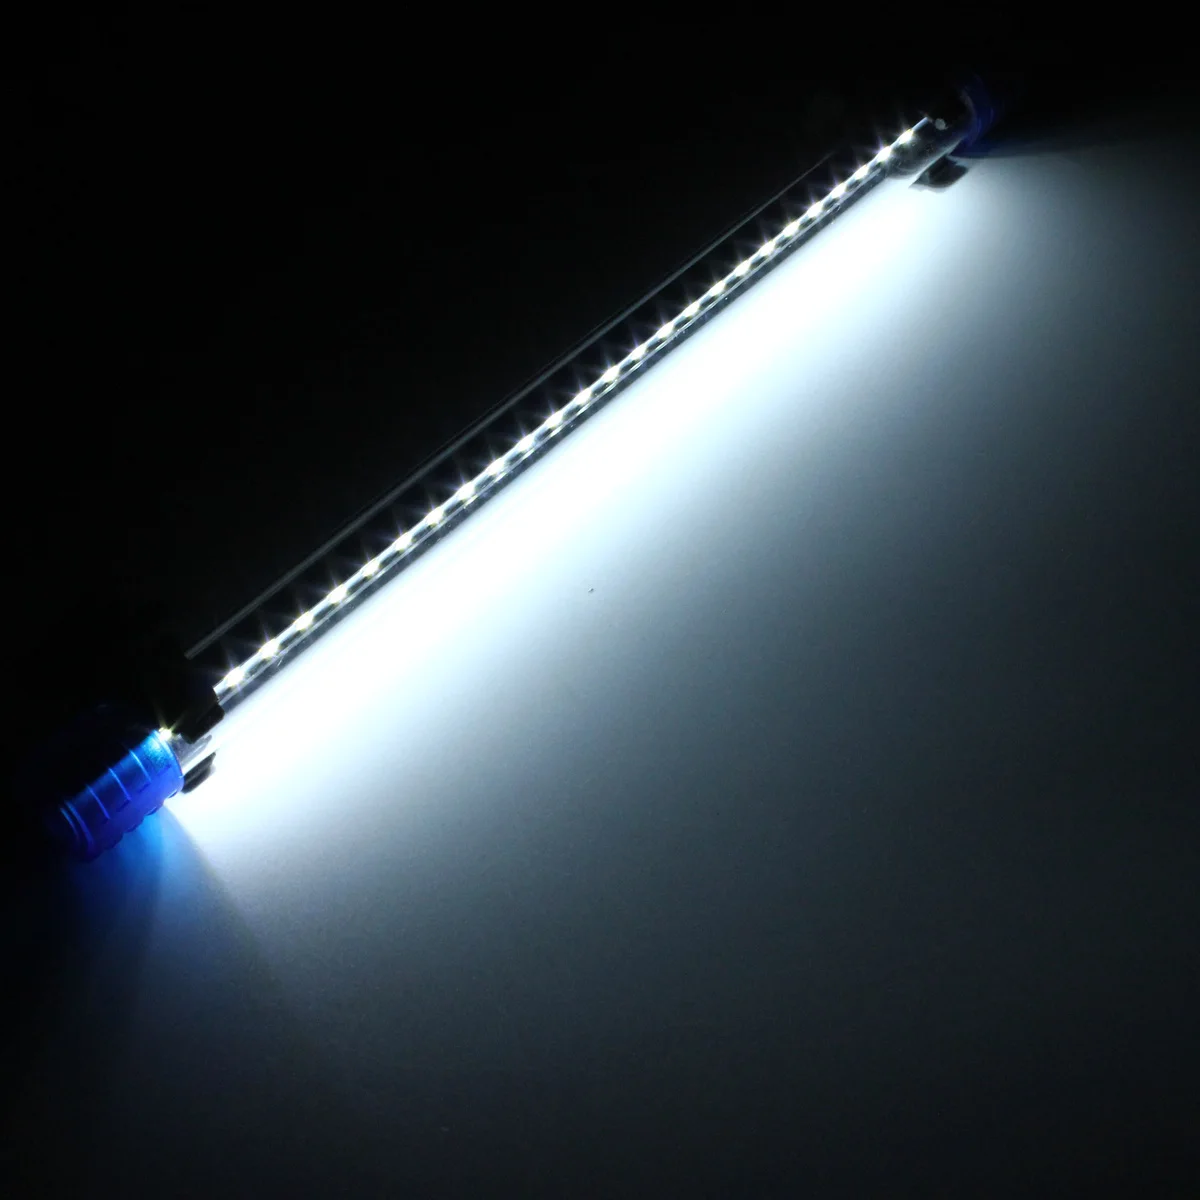 Аквариумный Водонепроницаемый светодиодный светильник, светильник для аквариума, погружной светильник, товары для тропических аквариумов 3 Вт 30 см, AC220V - Испускаемый цвет: Белый